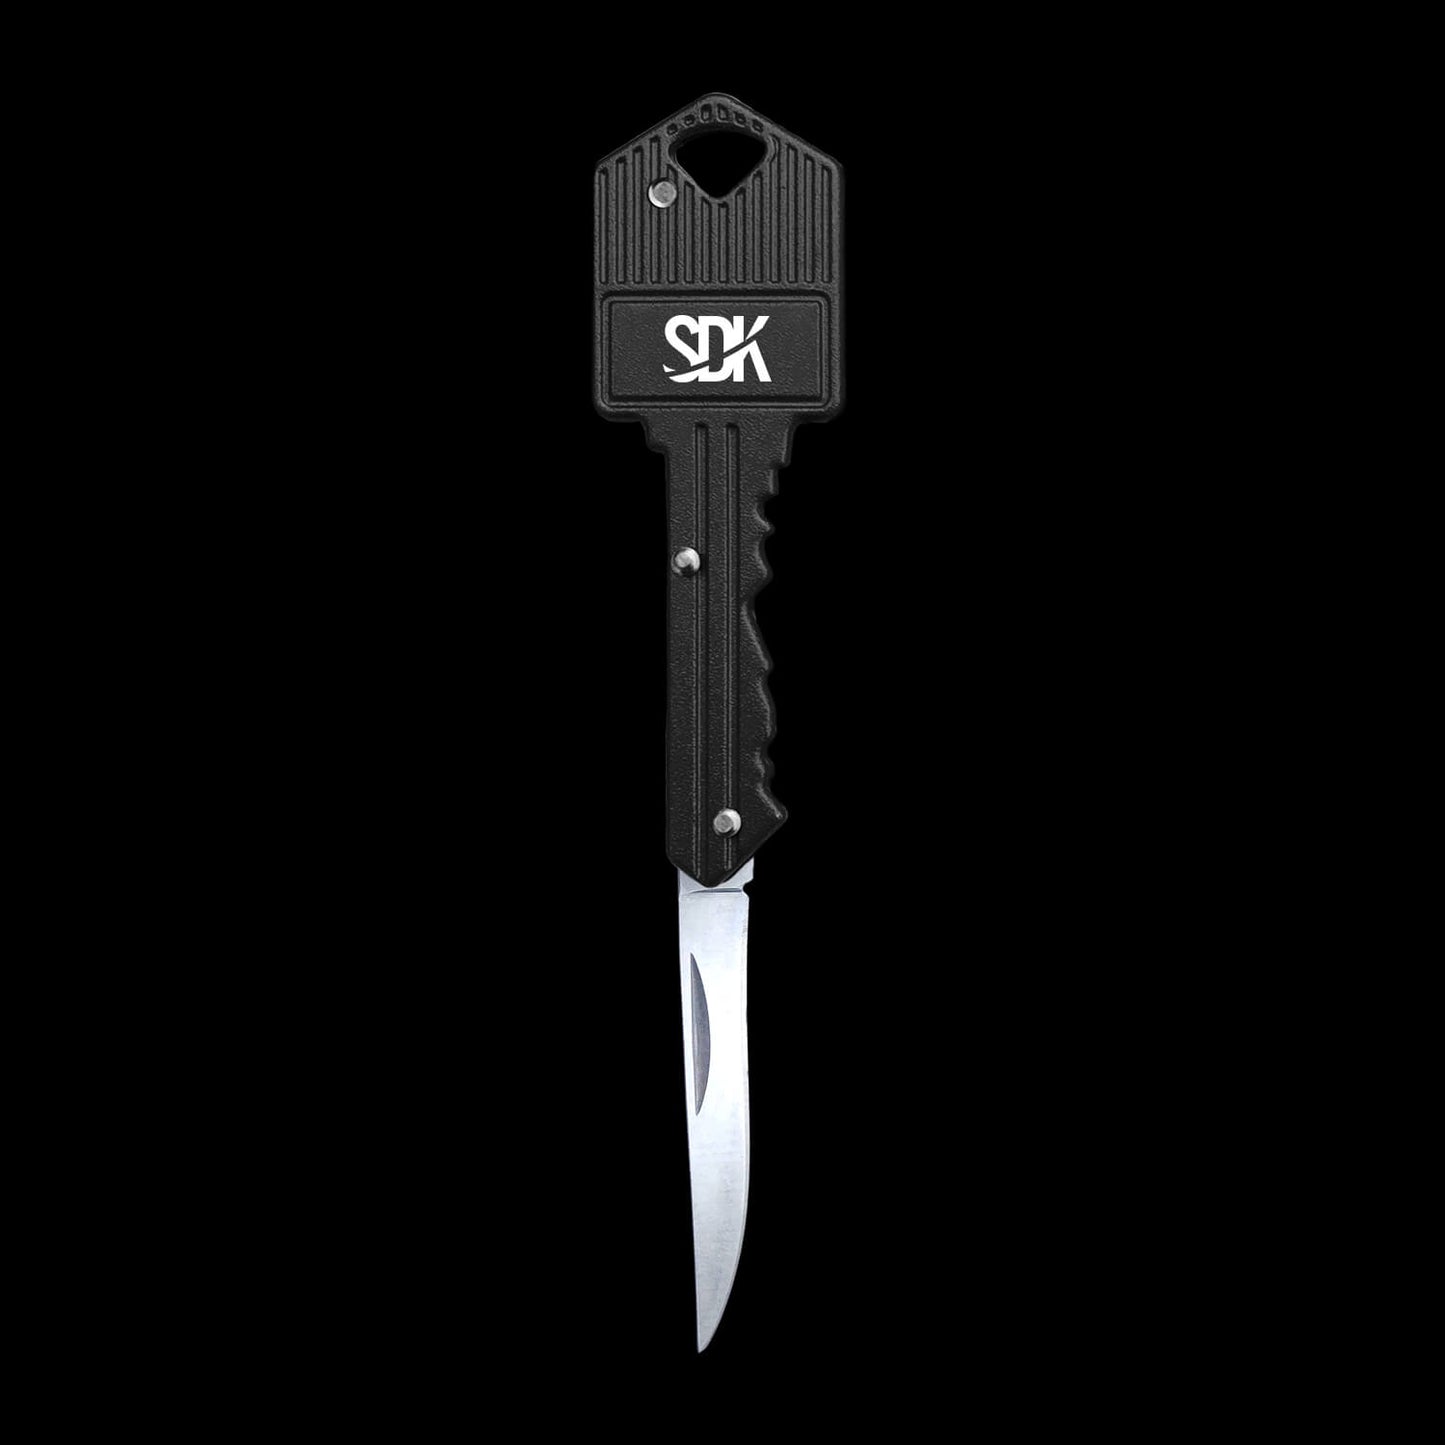 SDK Kit Black Key Knife (open position) (stainless steel key-shaped flip knife)